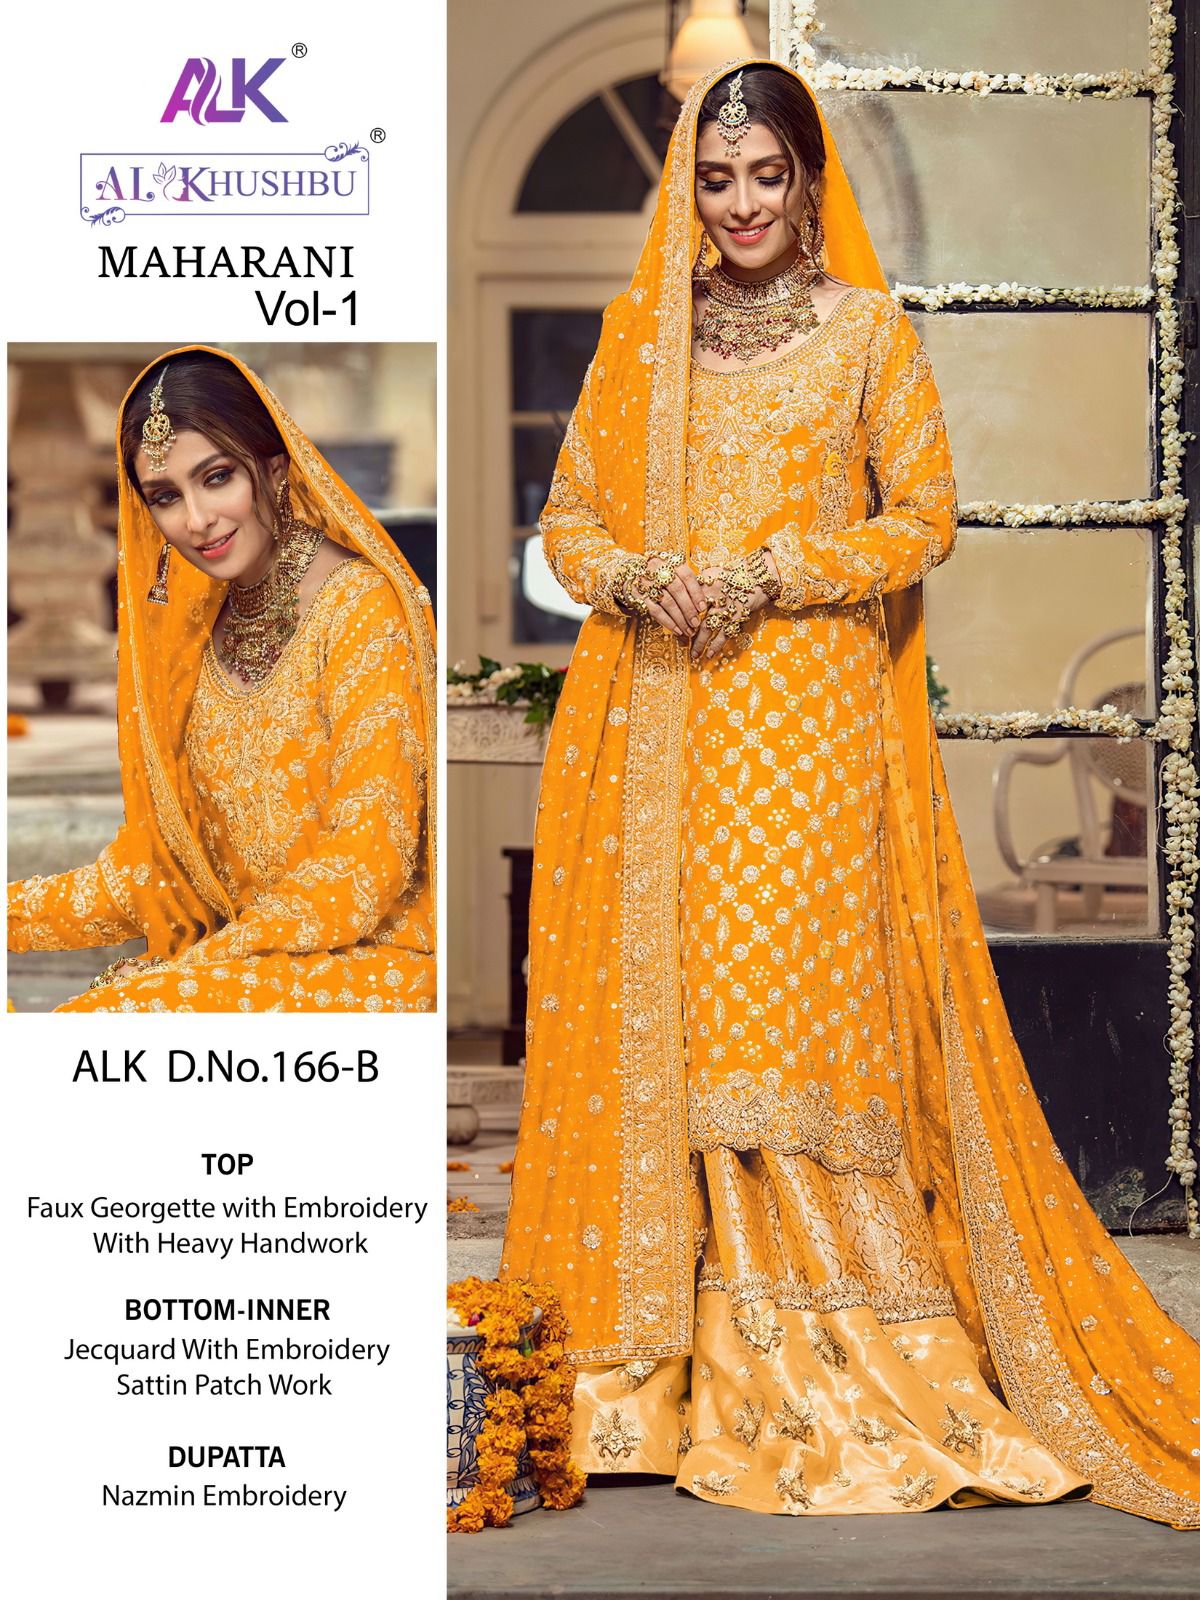 al khushbu maharani vol 1 alk d no 166 a b c d georgette catchy look salwar suit catalog